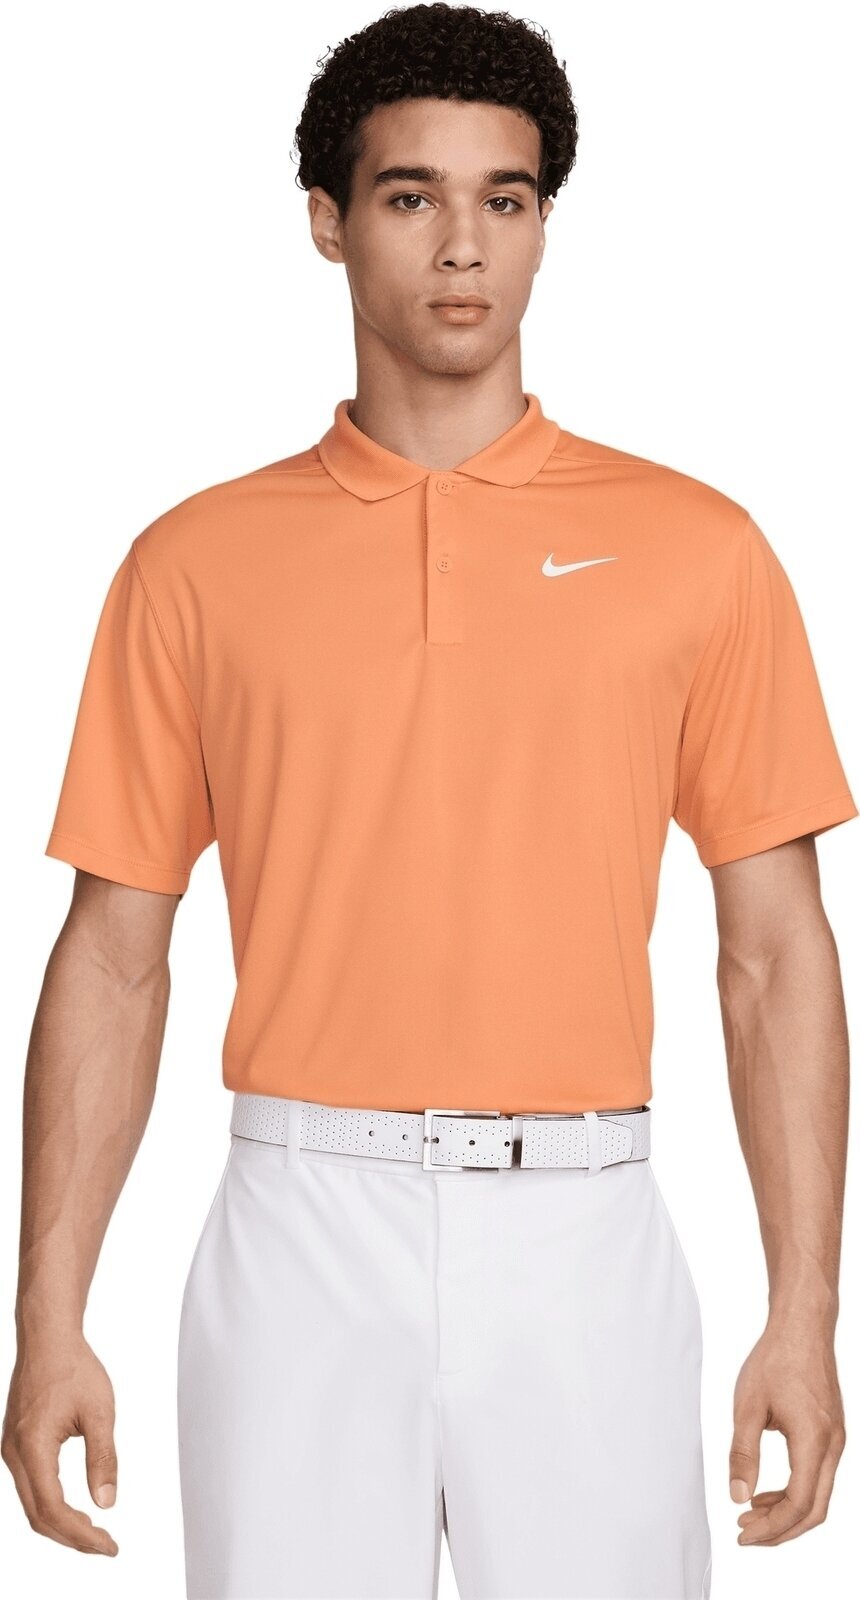 Polo košeľa Nike Dri-Fit Victory Solid Mens Polo Orange Trance/White M Polo košeľa